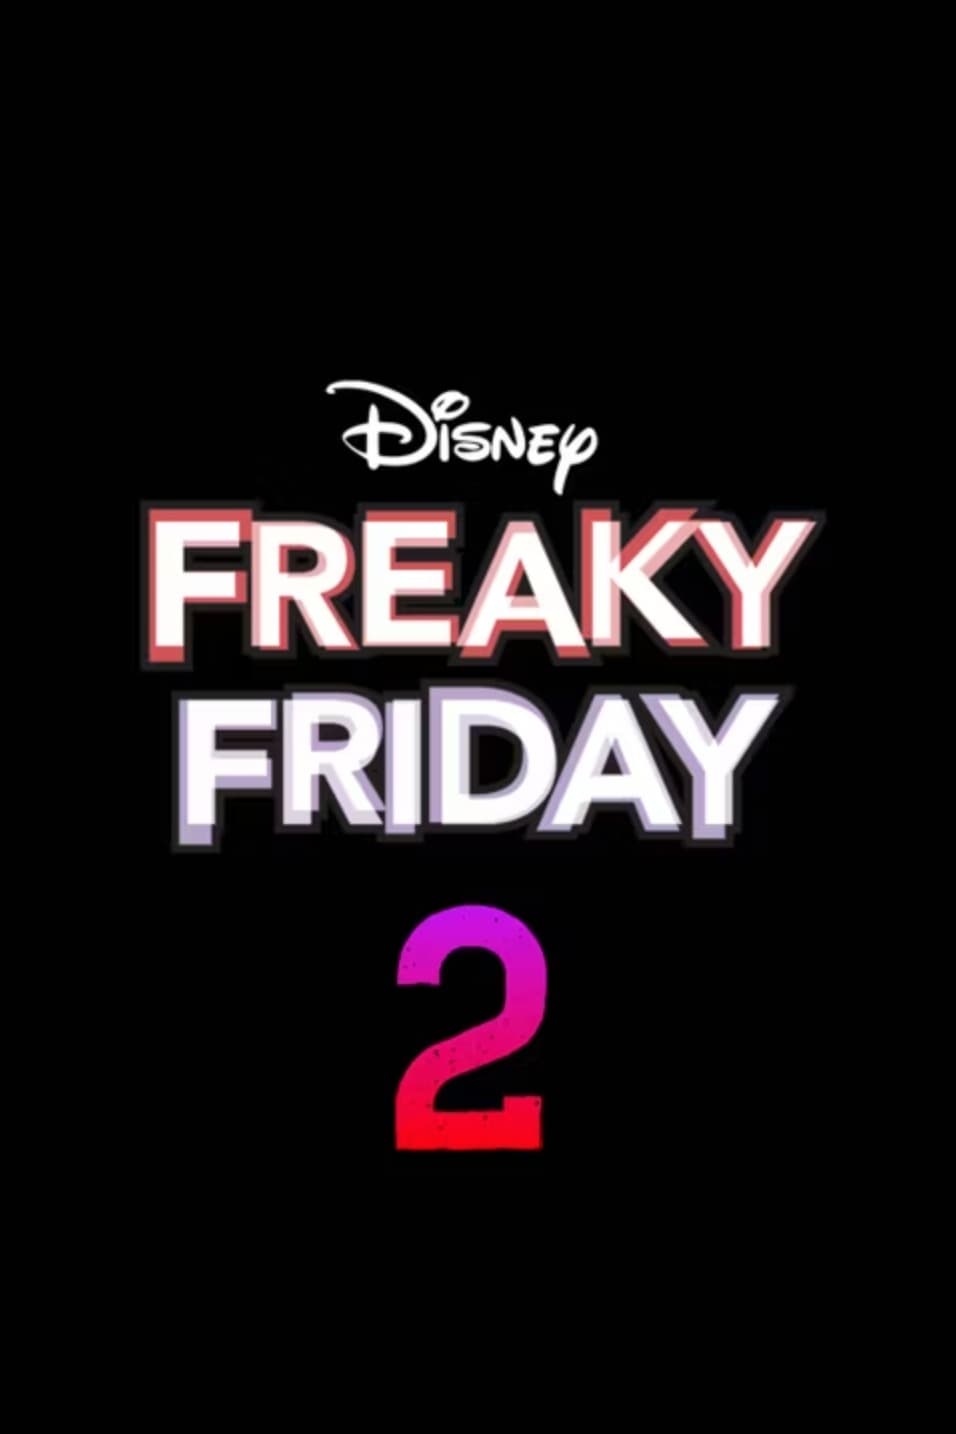 Freaky Friday 2